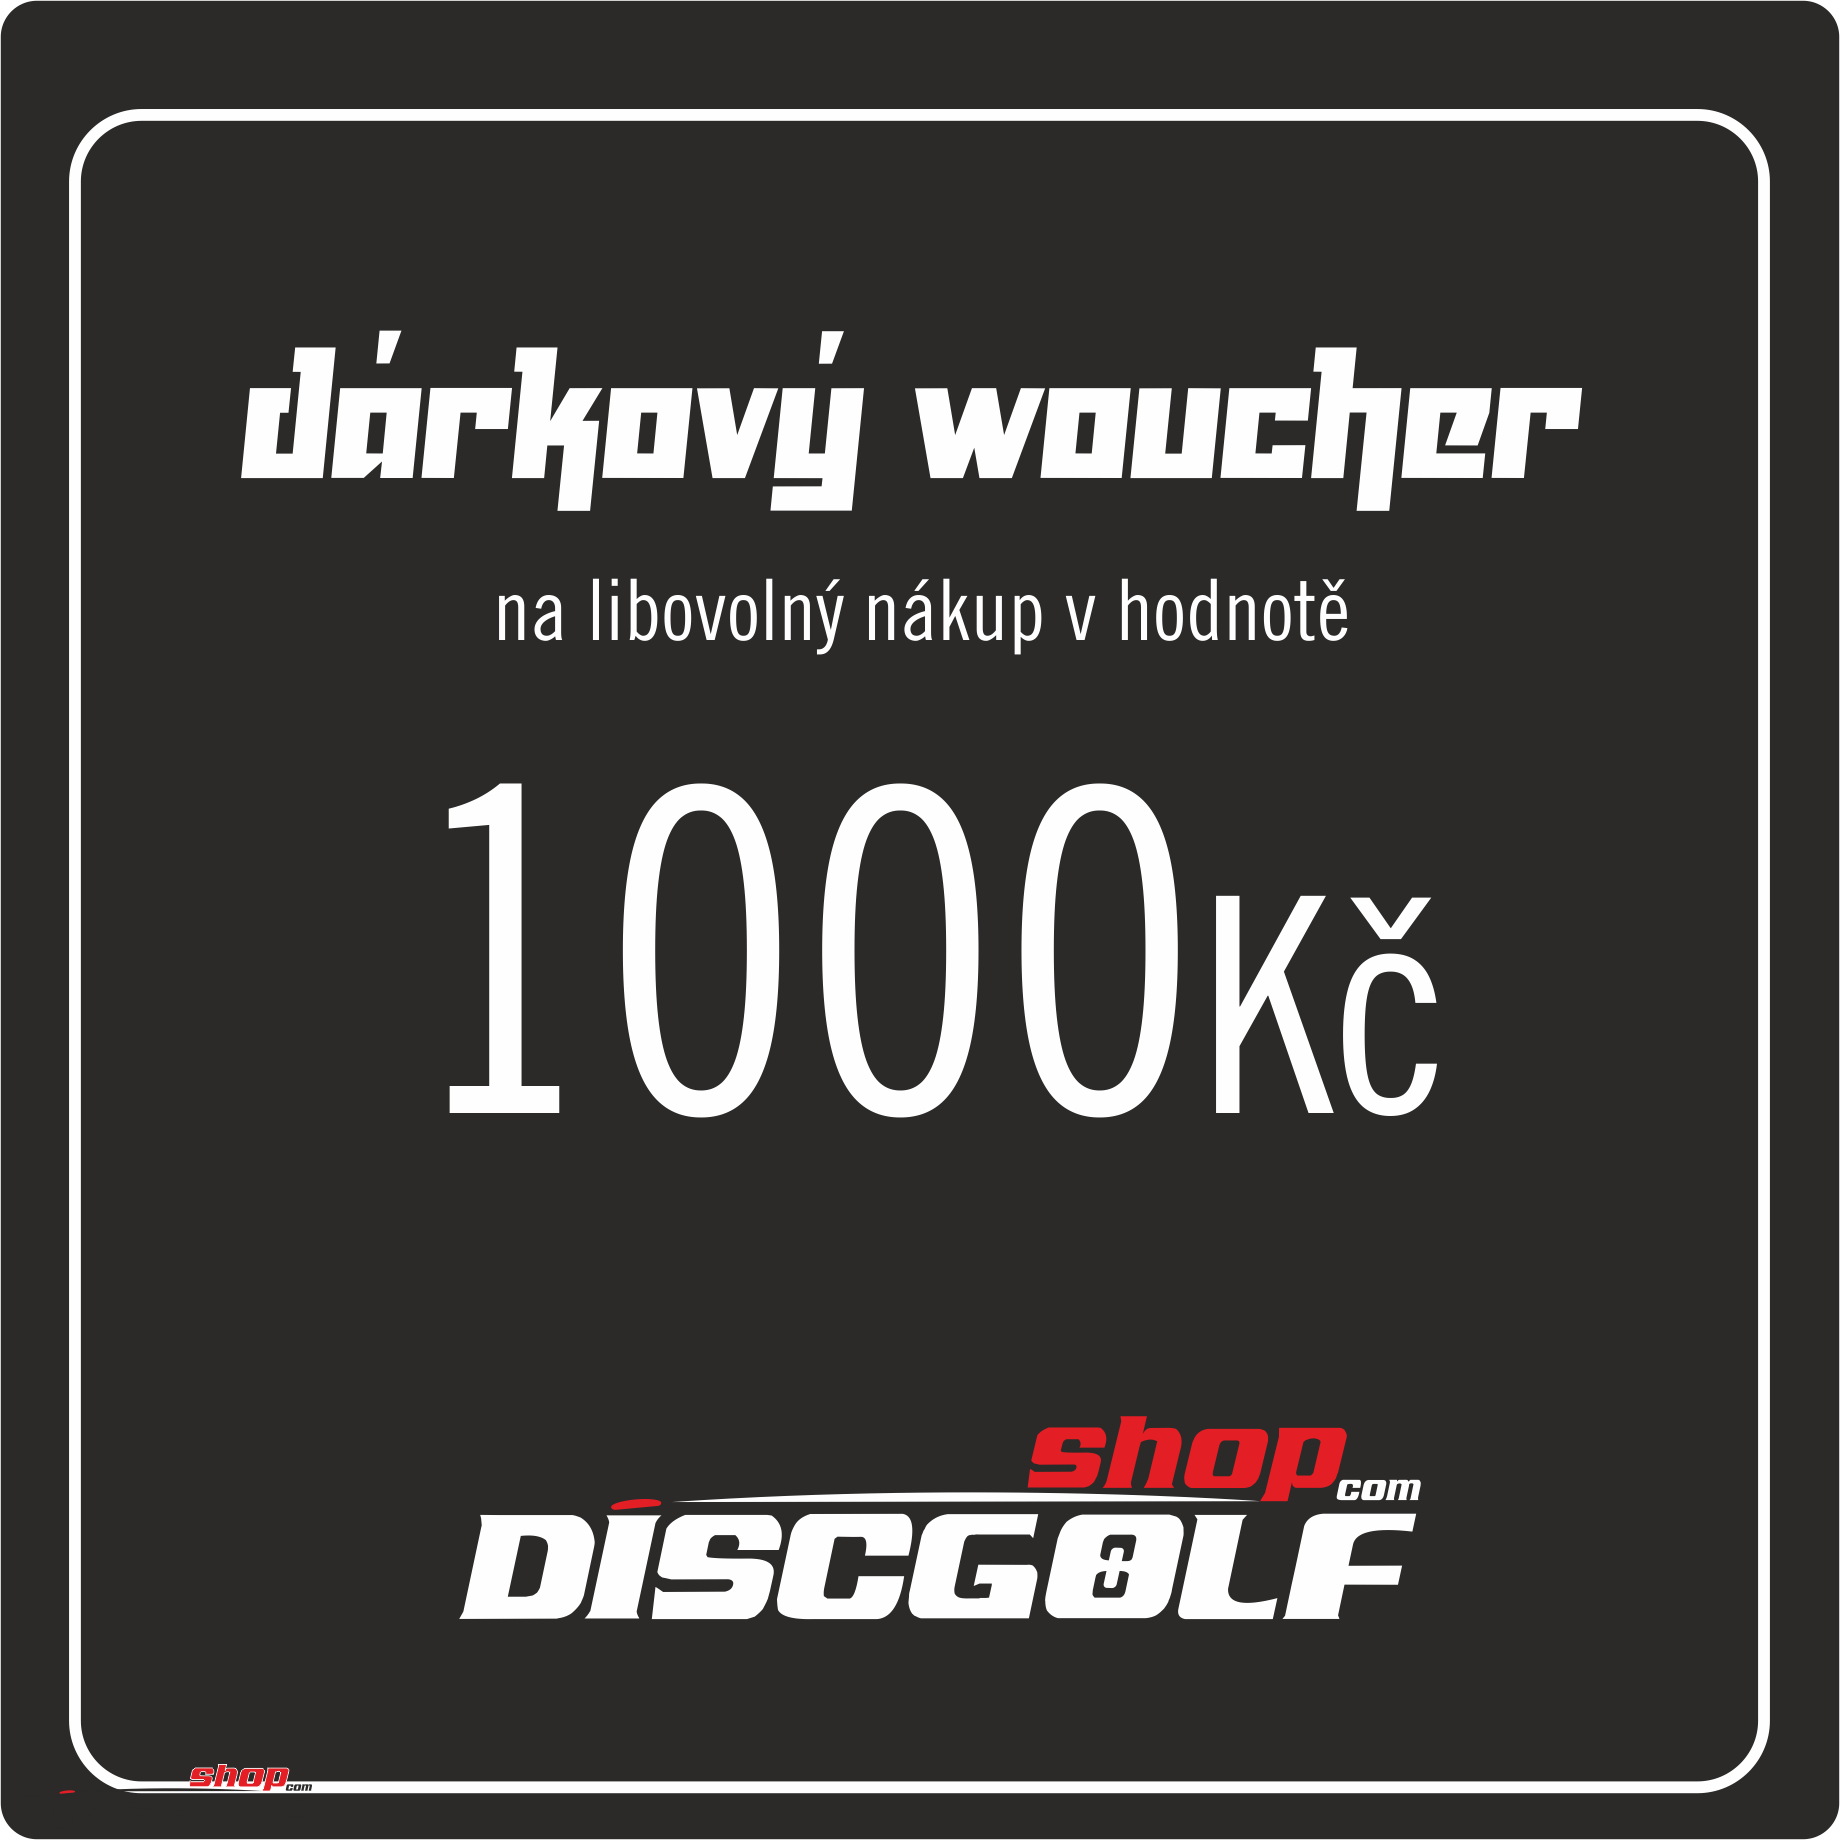 Dárkový woucher - kupon 1000Kč (discgolf)